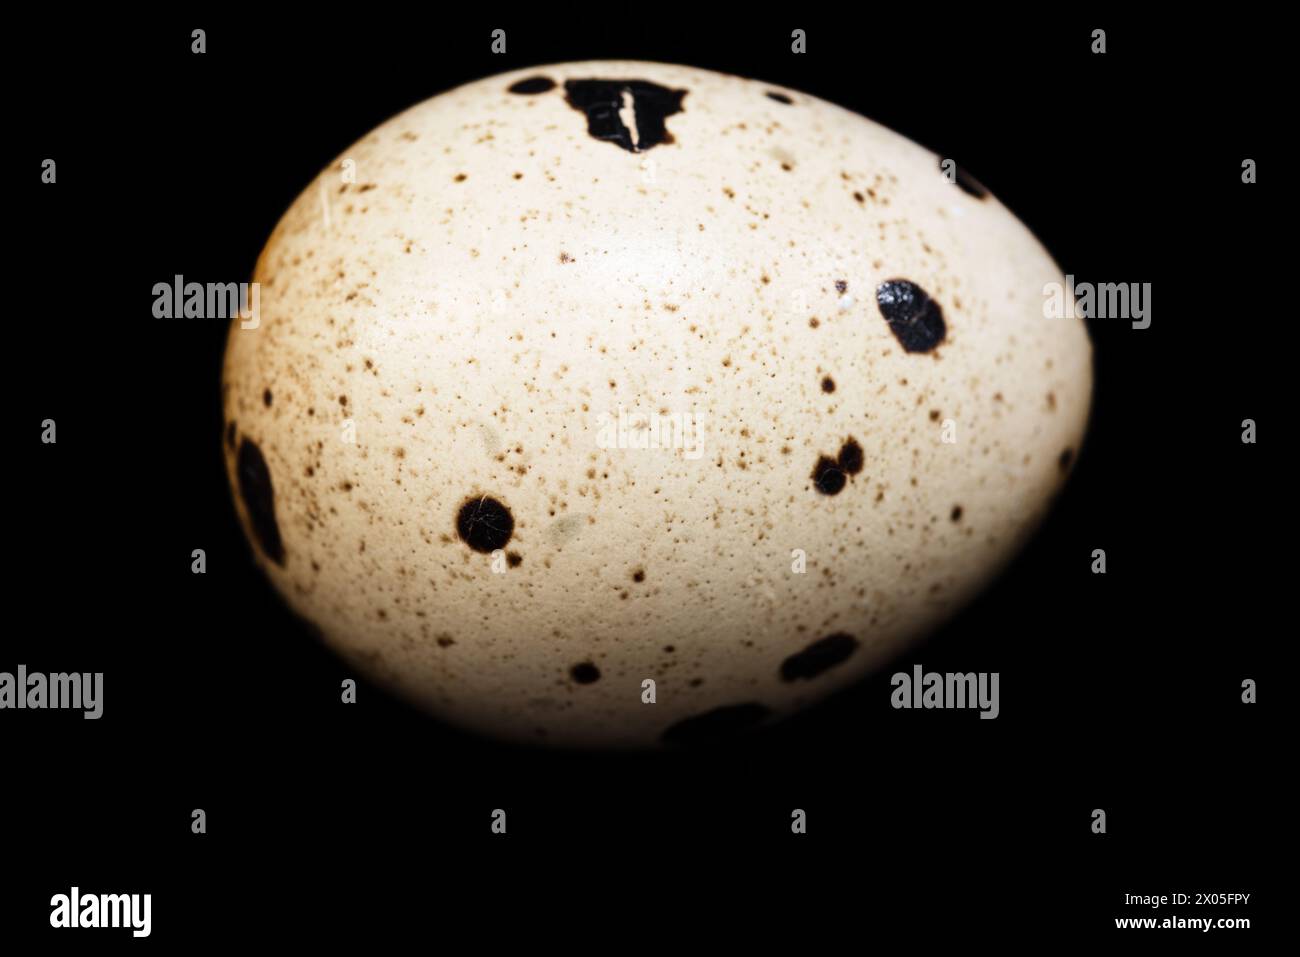 close up image of quail egg on black background Stock Photo